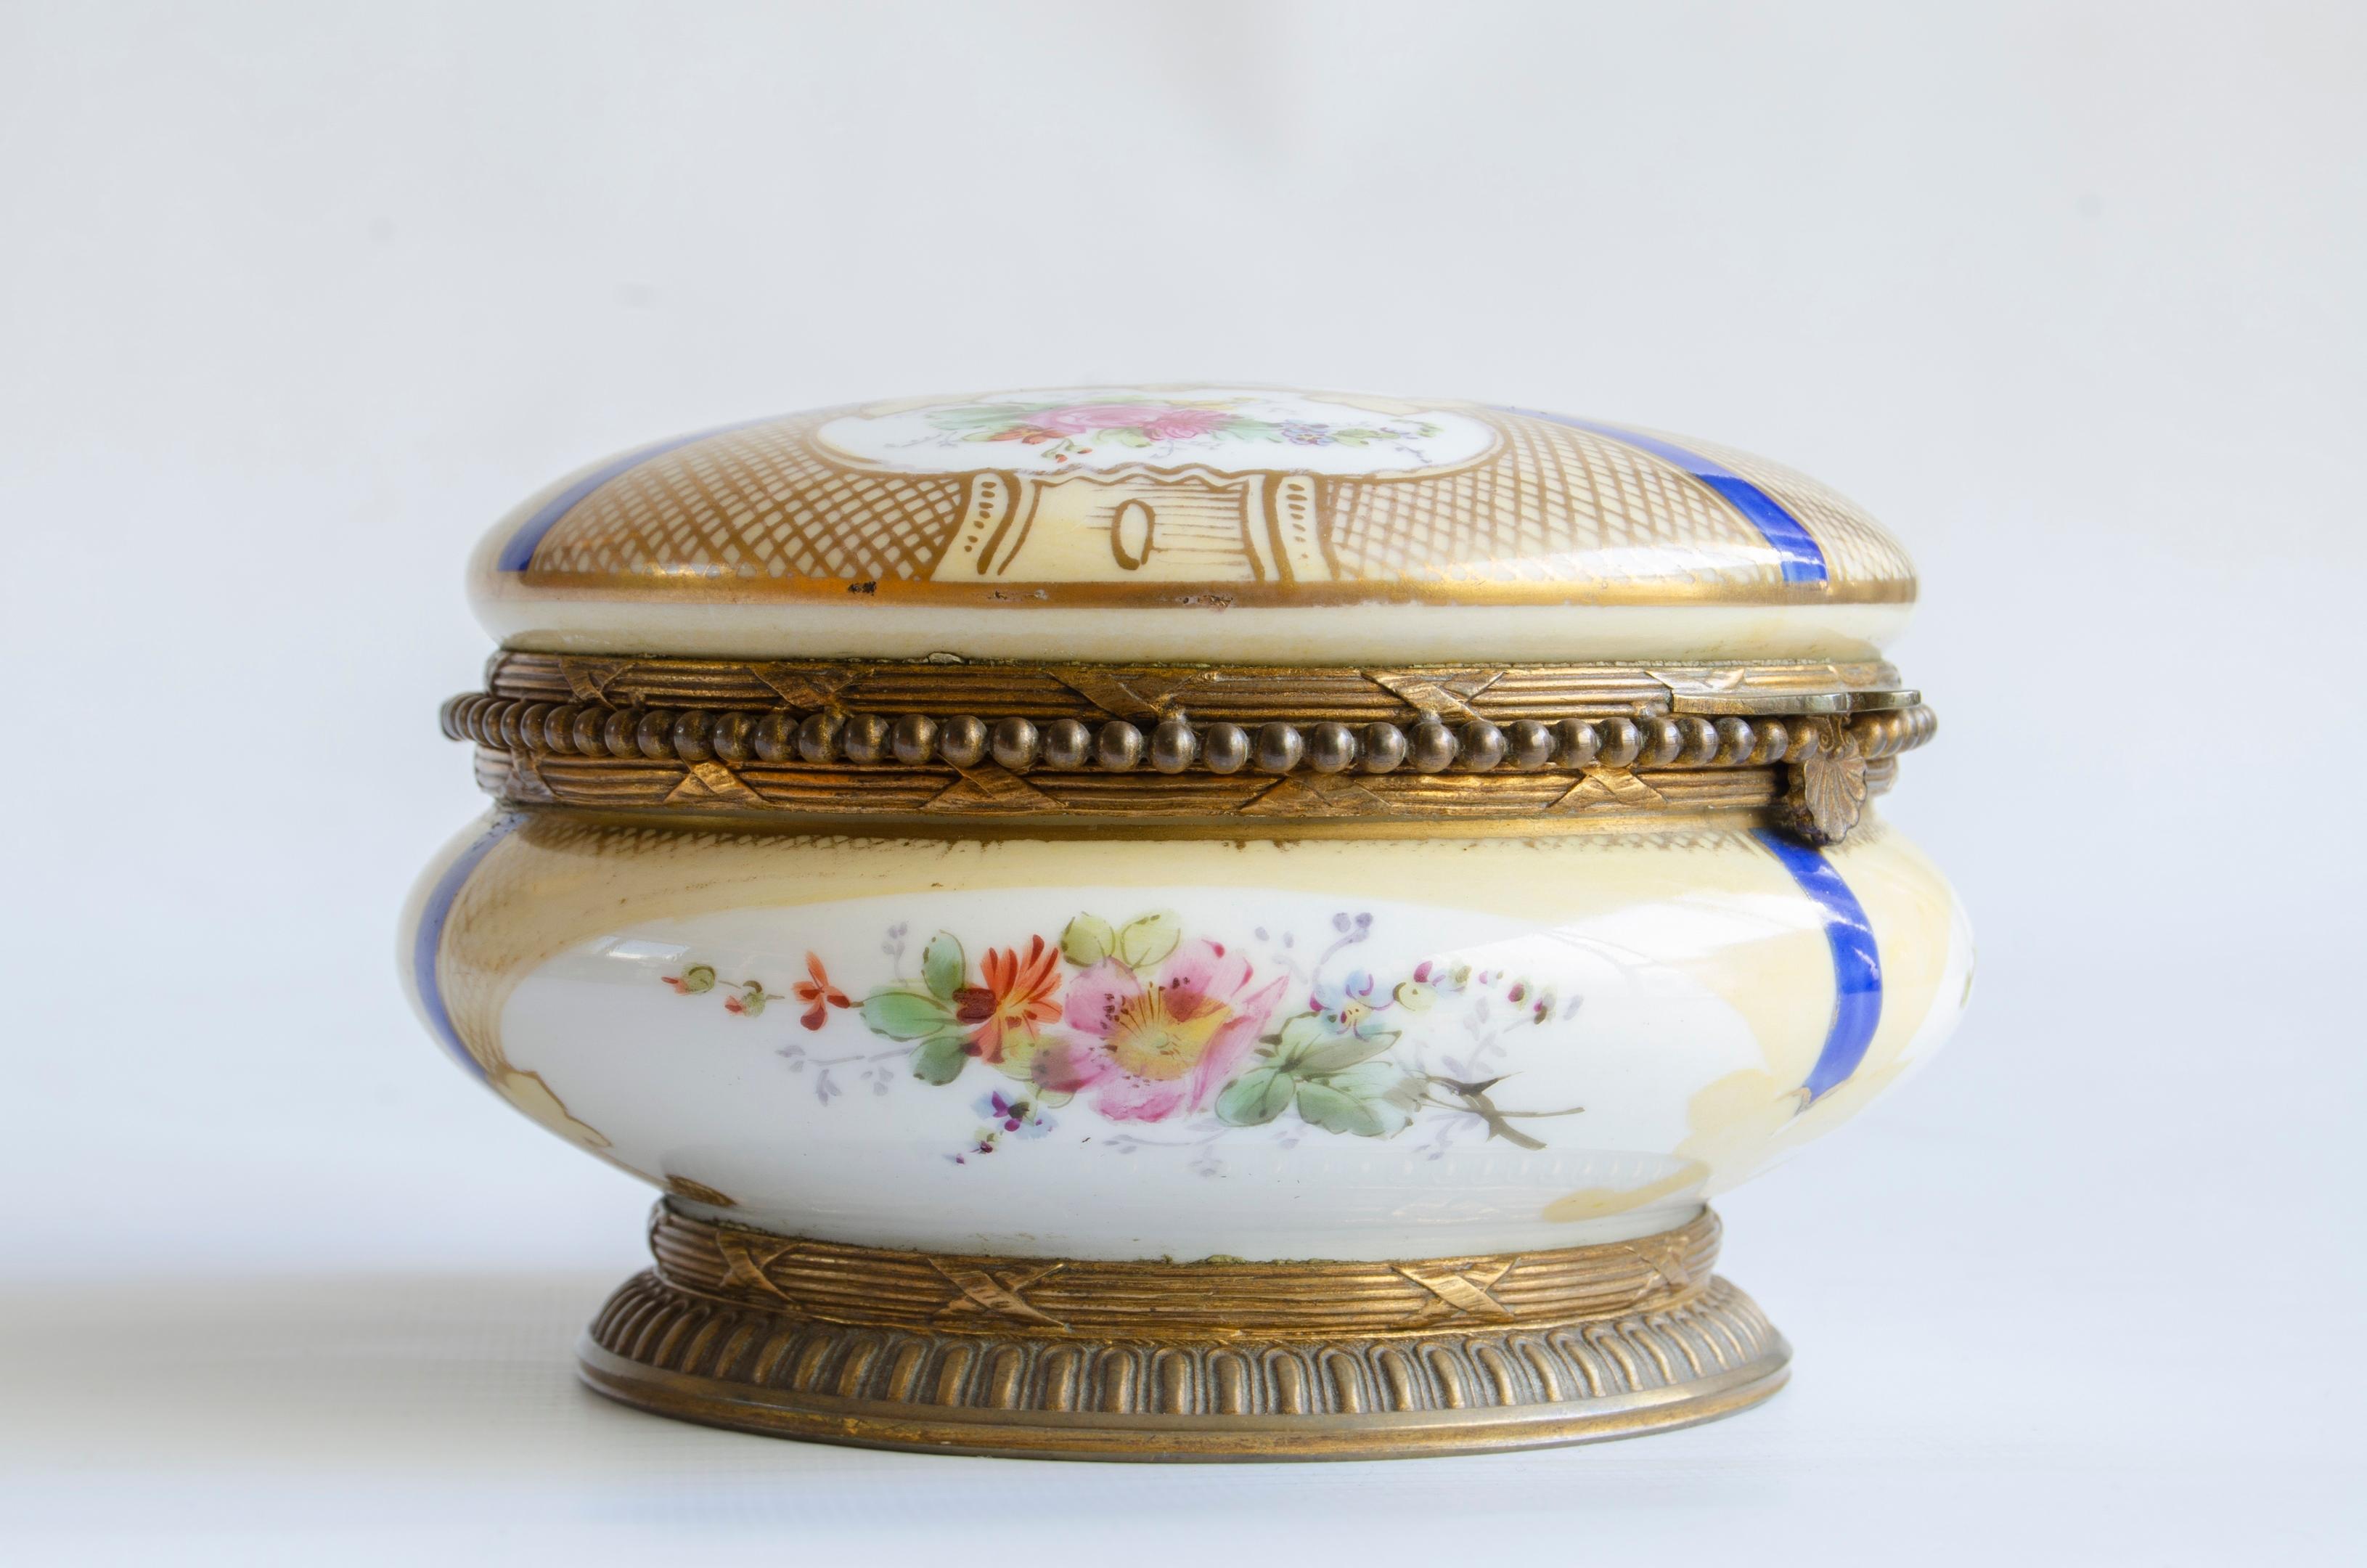 White round Sèvres box
rococo style perfect condition
origin France, circa 1900.